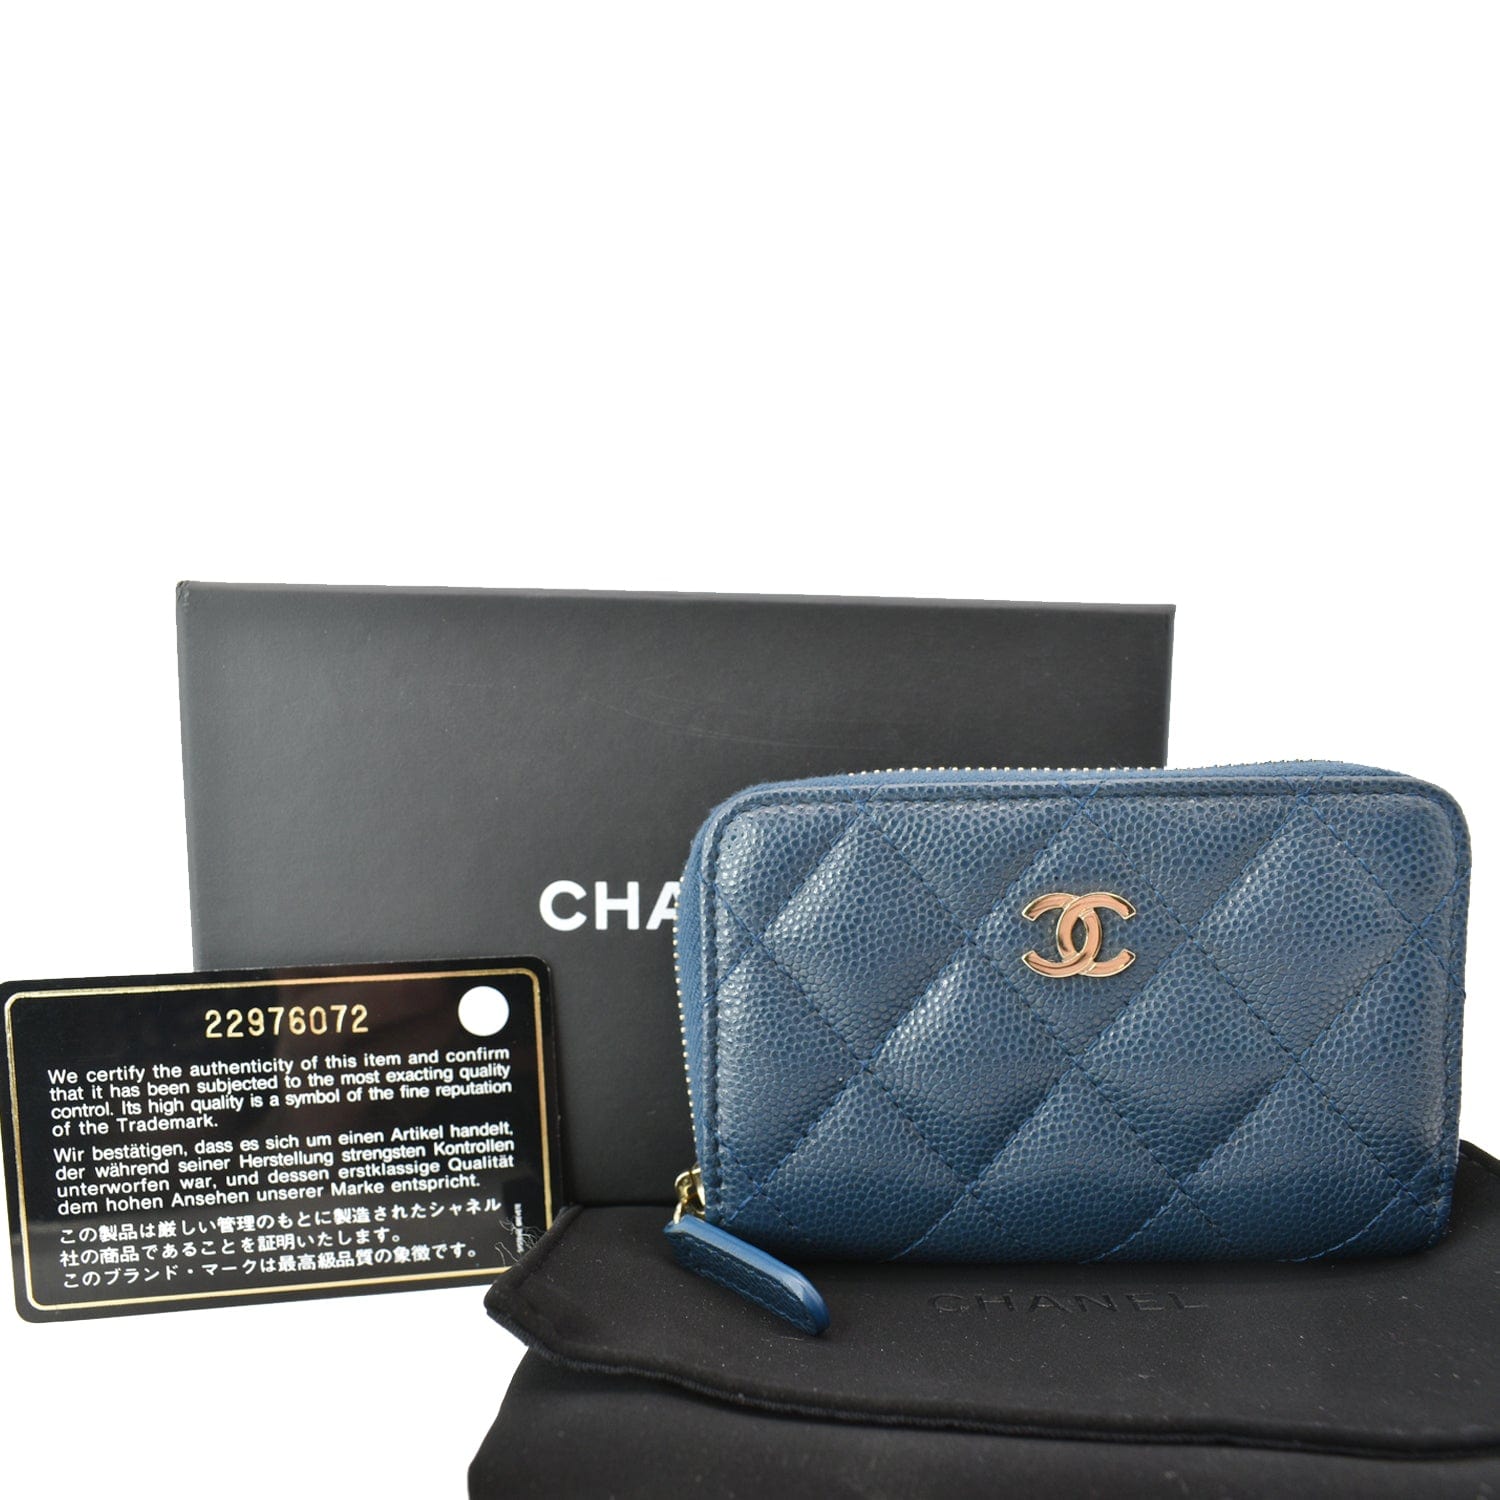 chanel women's wallet